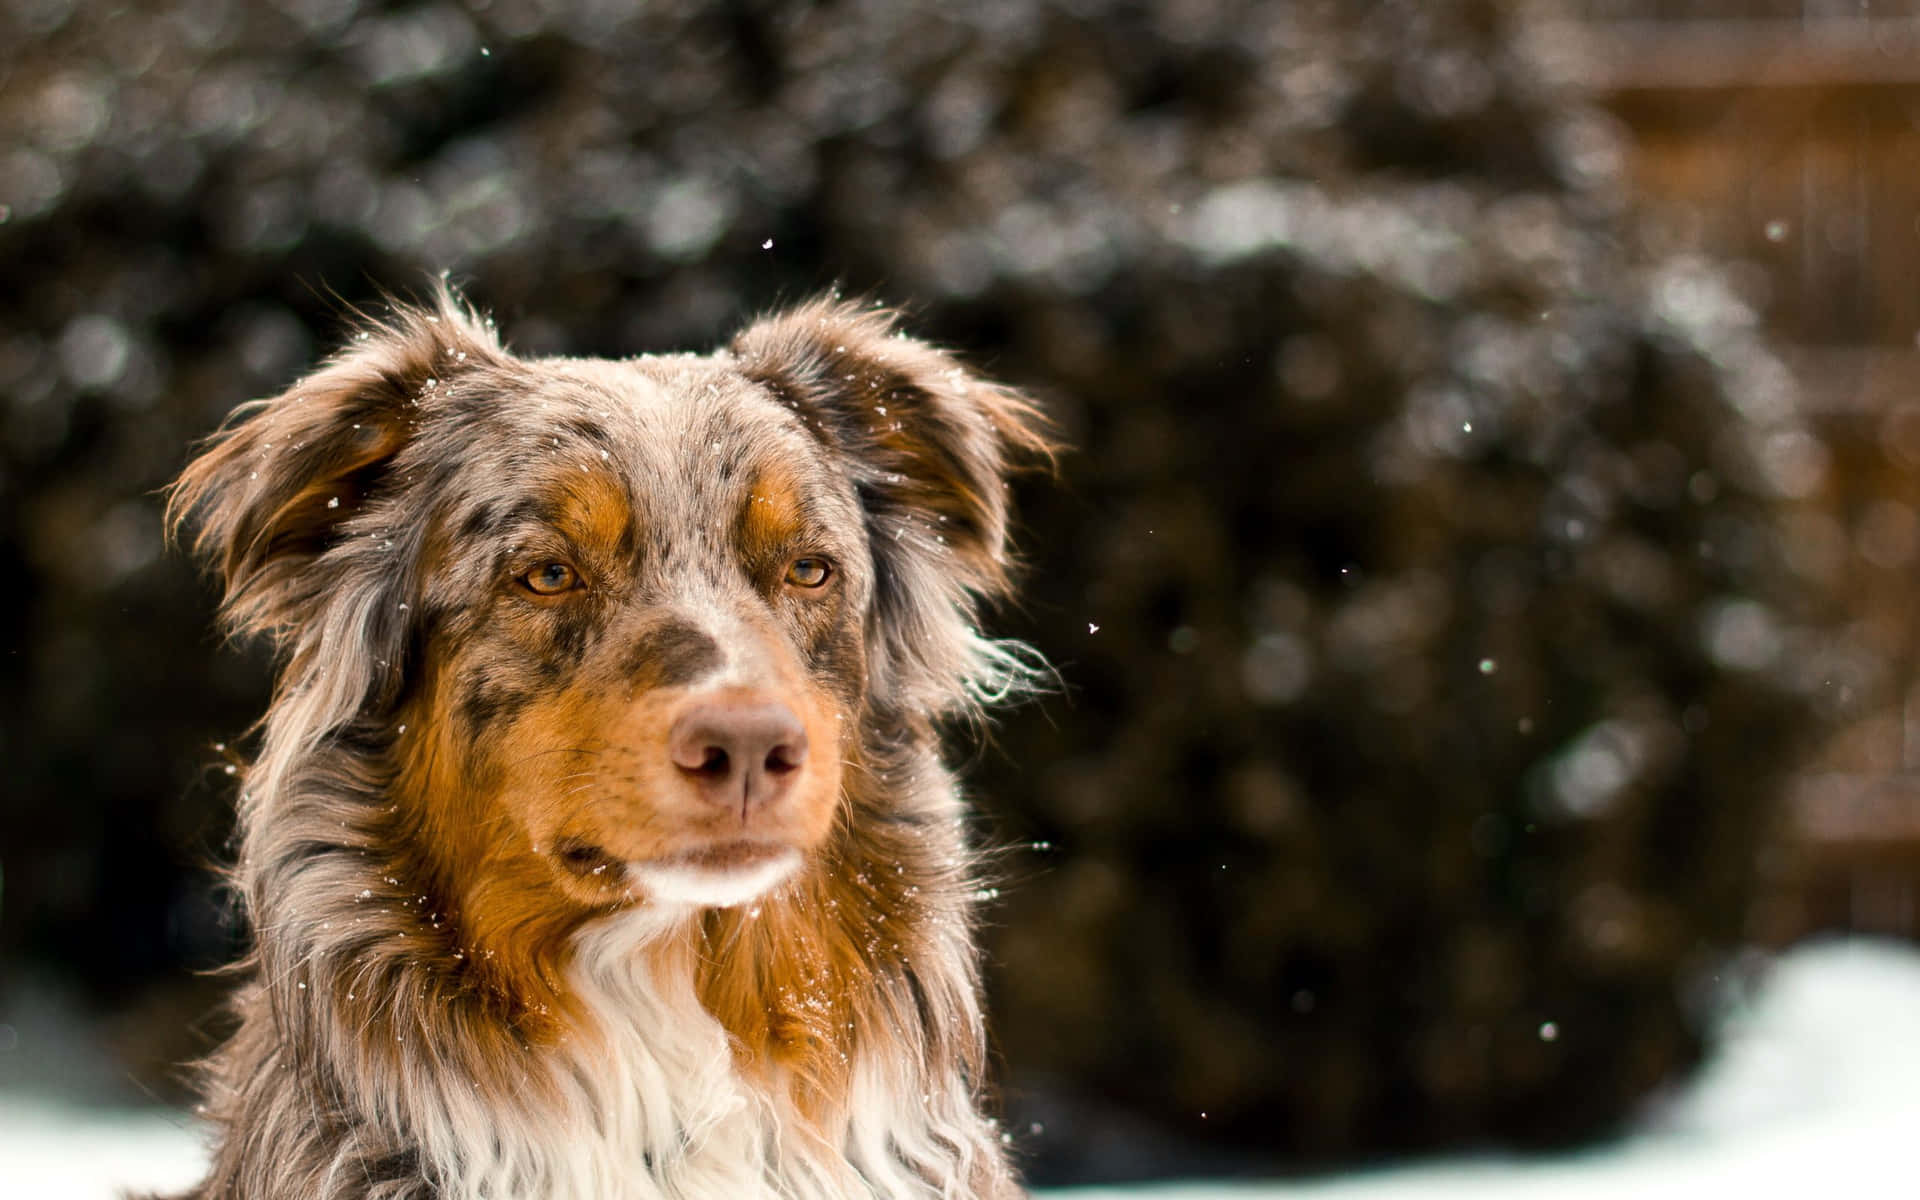 Imagende Un Perro Australian Shepherd En La Nieve De Invierno.